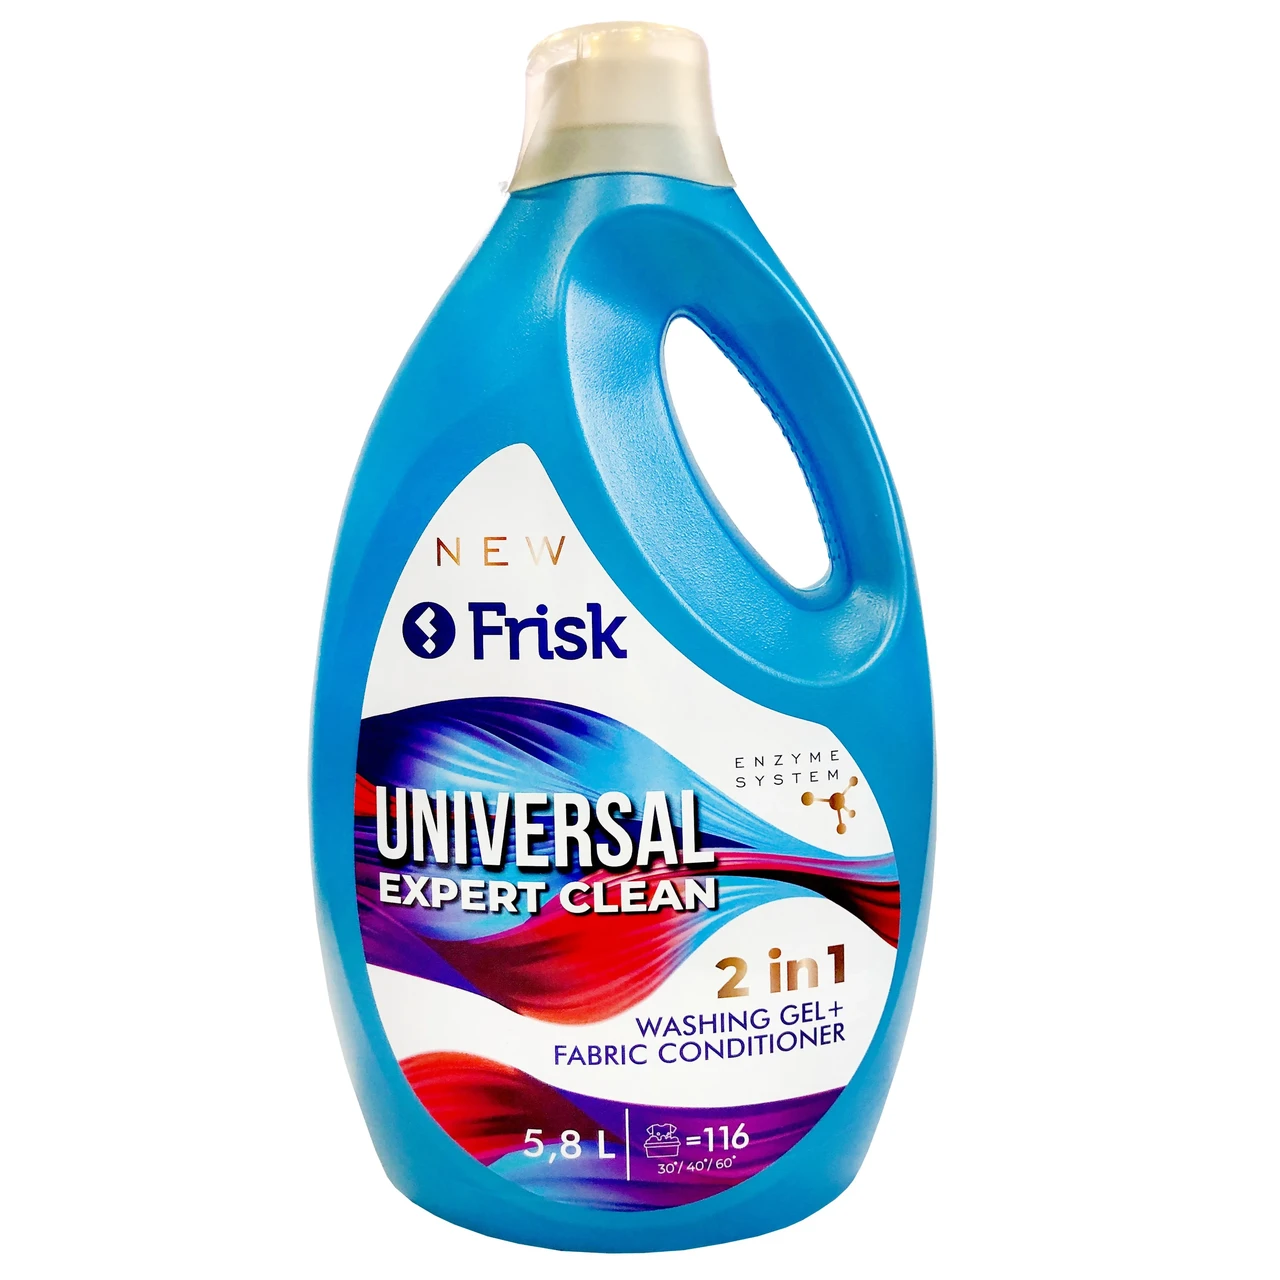 Гель для прання Frisk Universal Expert Clean 2 in 1, 5,8 л